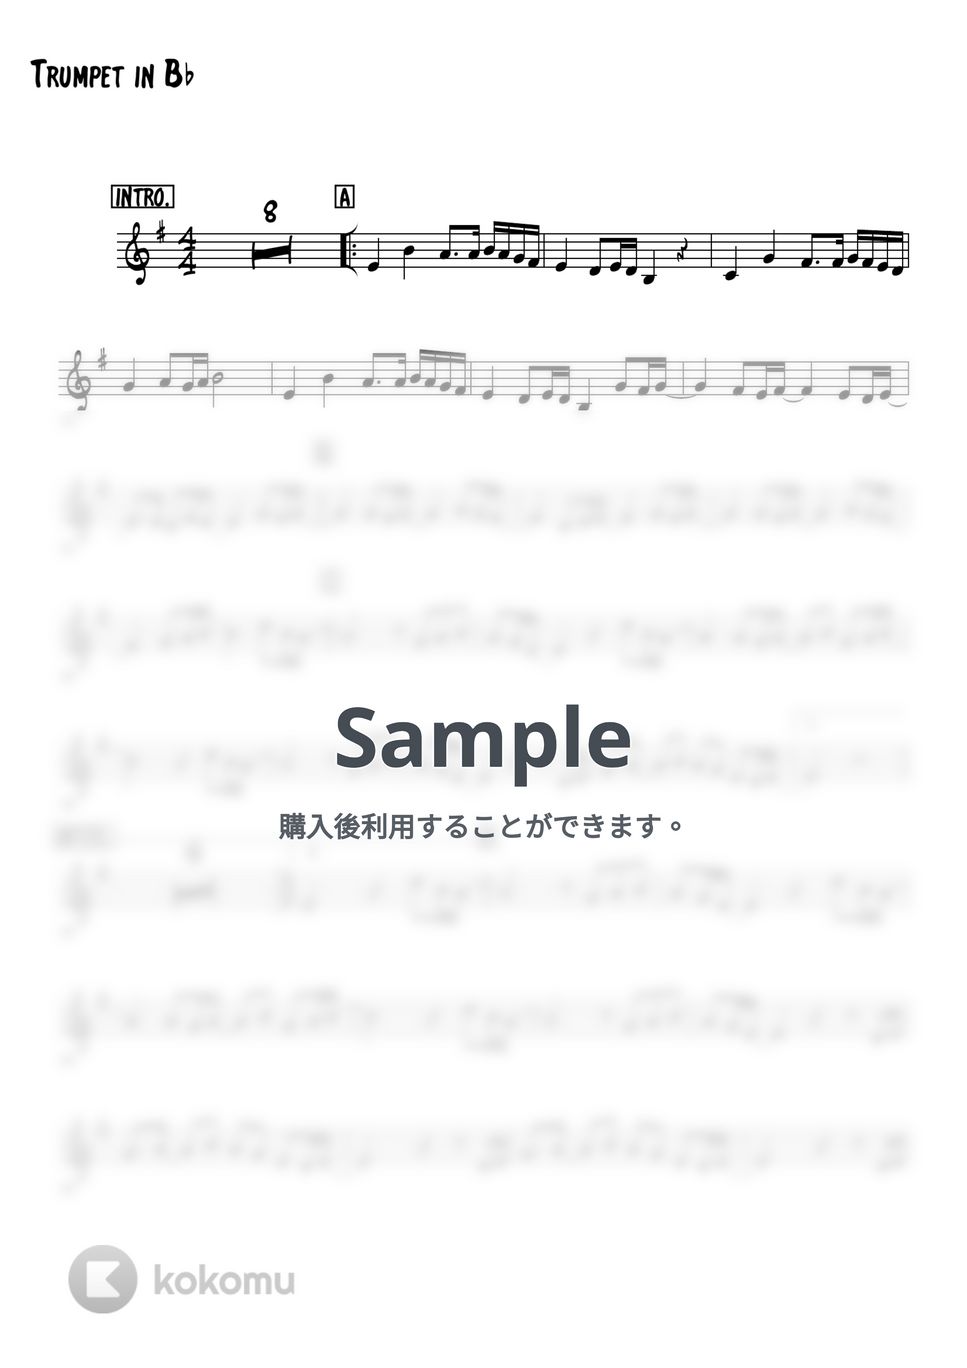 松任谷由美 - 春よ、来い (トランペットメロディー楽譜) by 高田将利